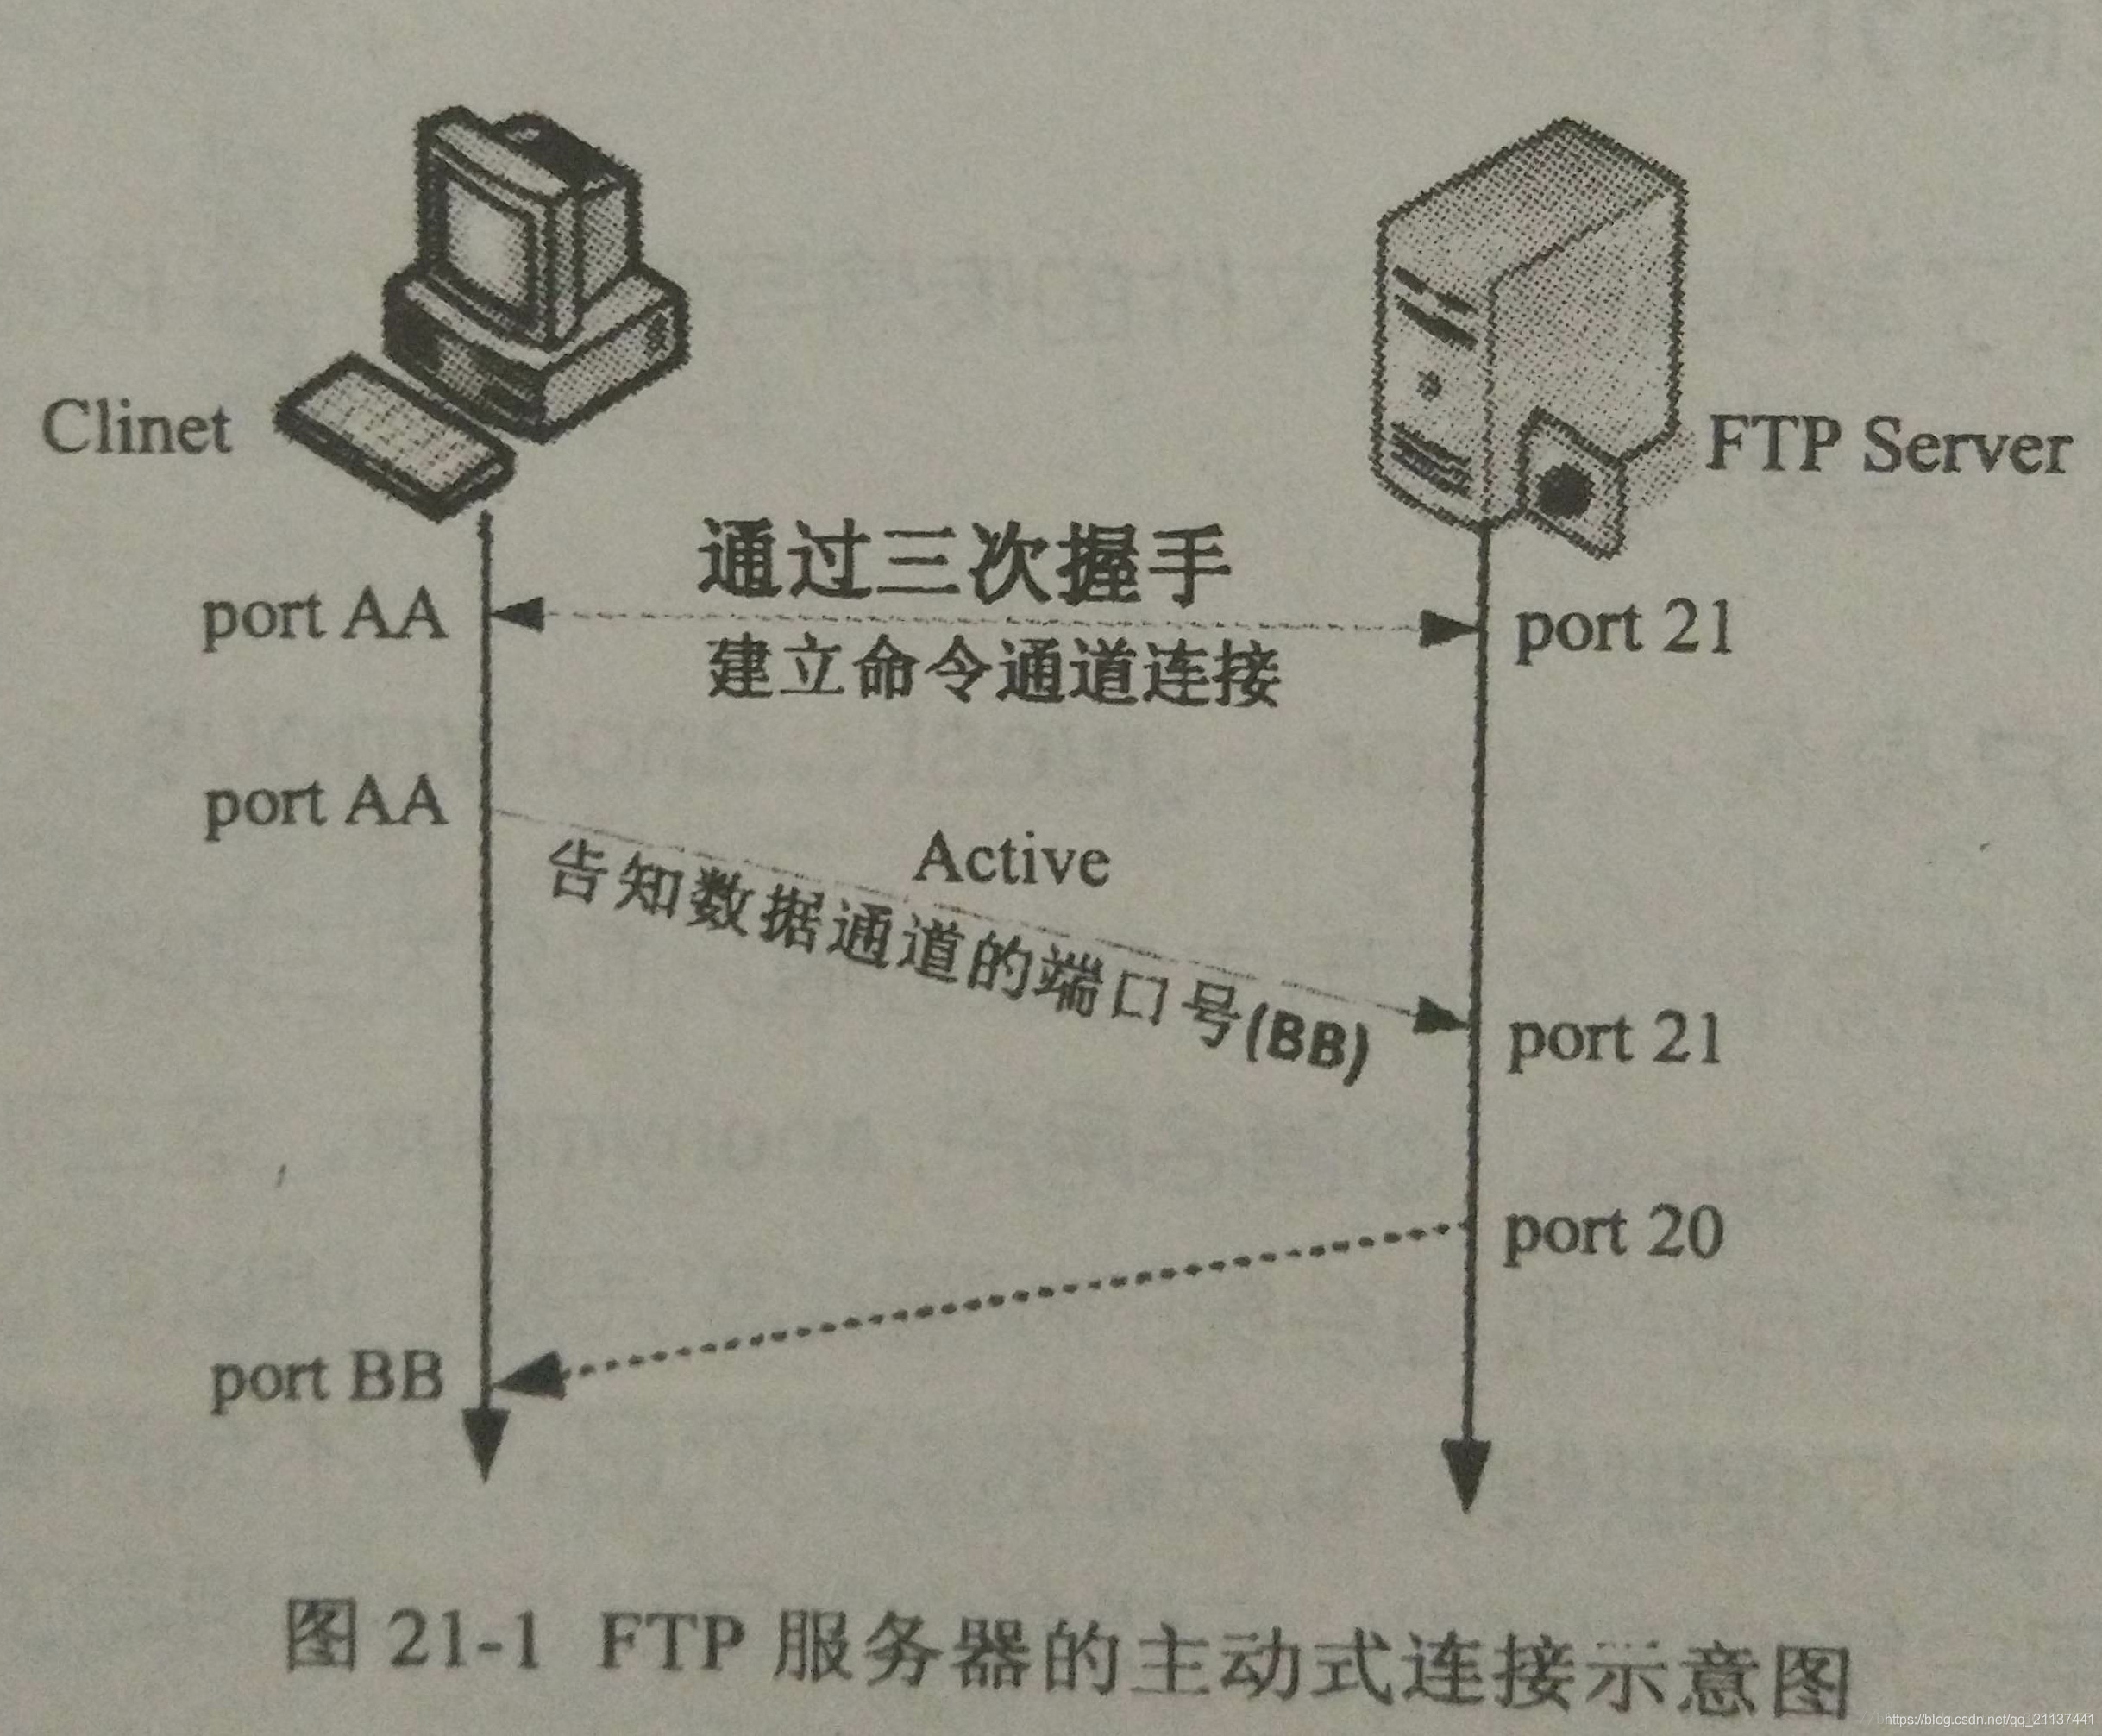 centos7下 FTP服务器的配置,以及配置ftp支持ftps